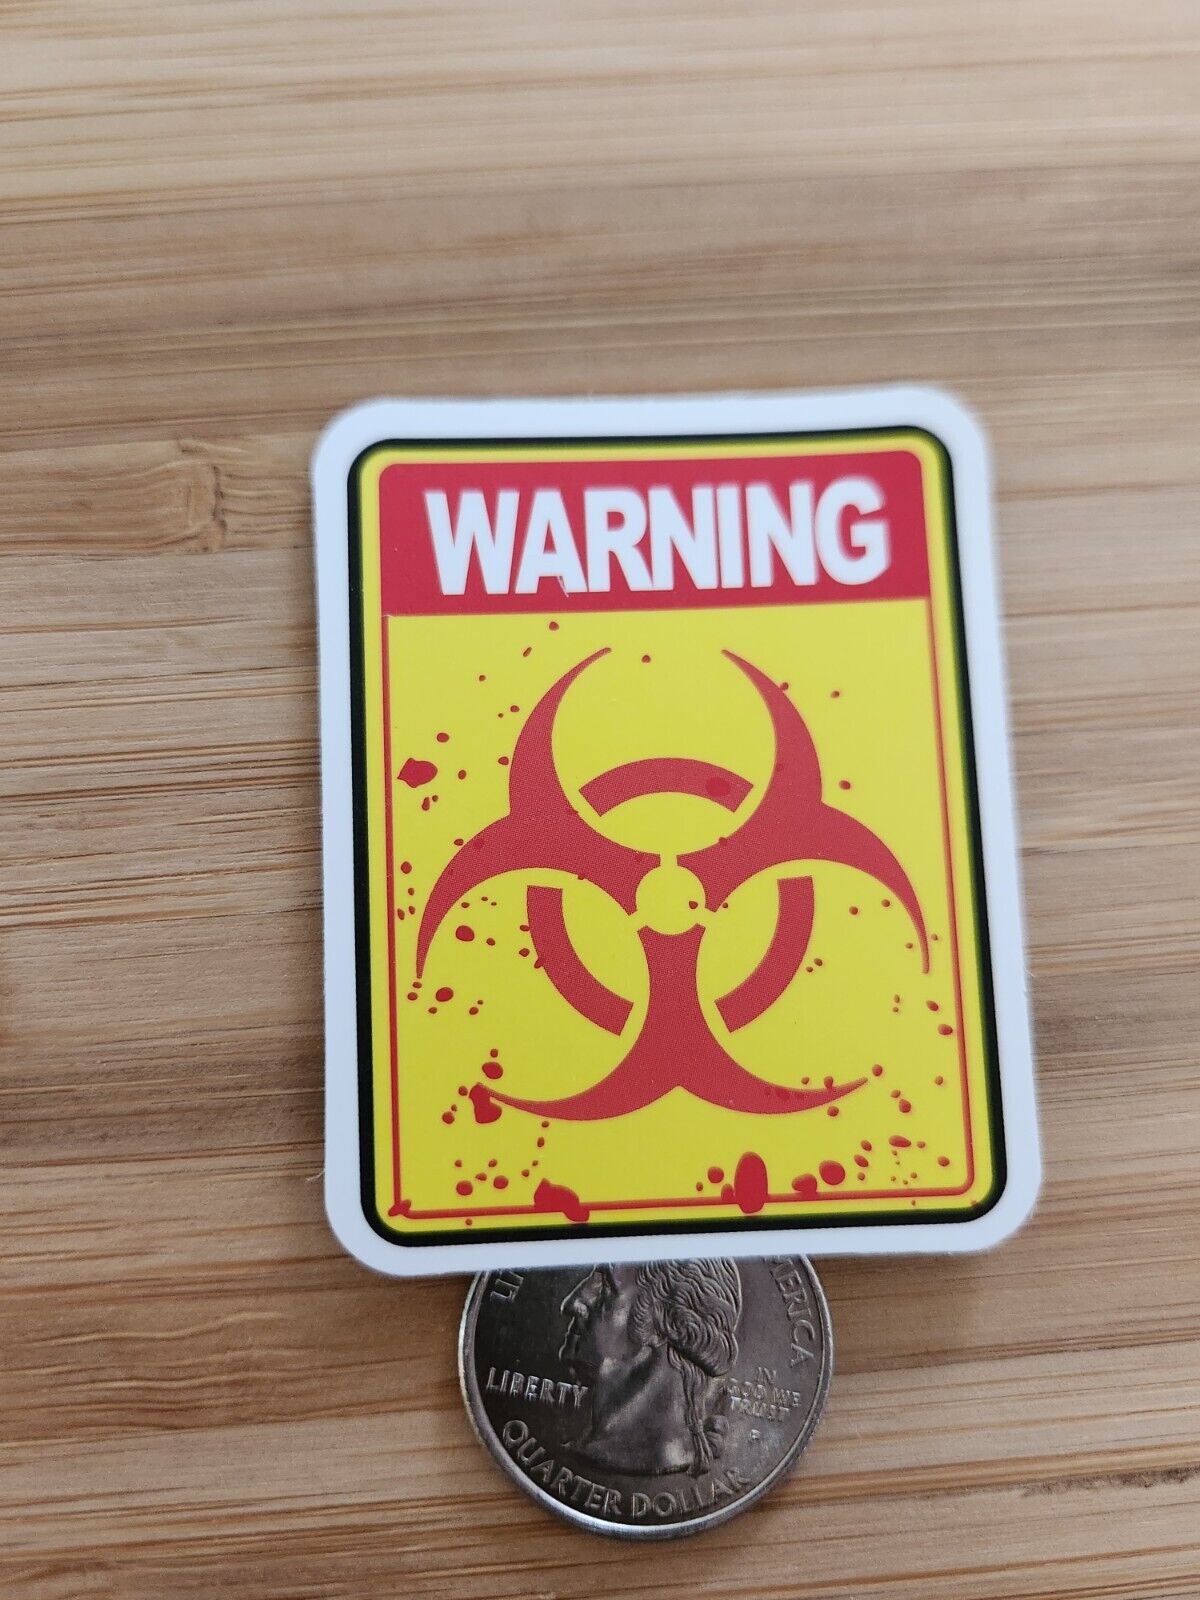  Warning Sticker Laptop Sticker Decal Biohazard Sticker